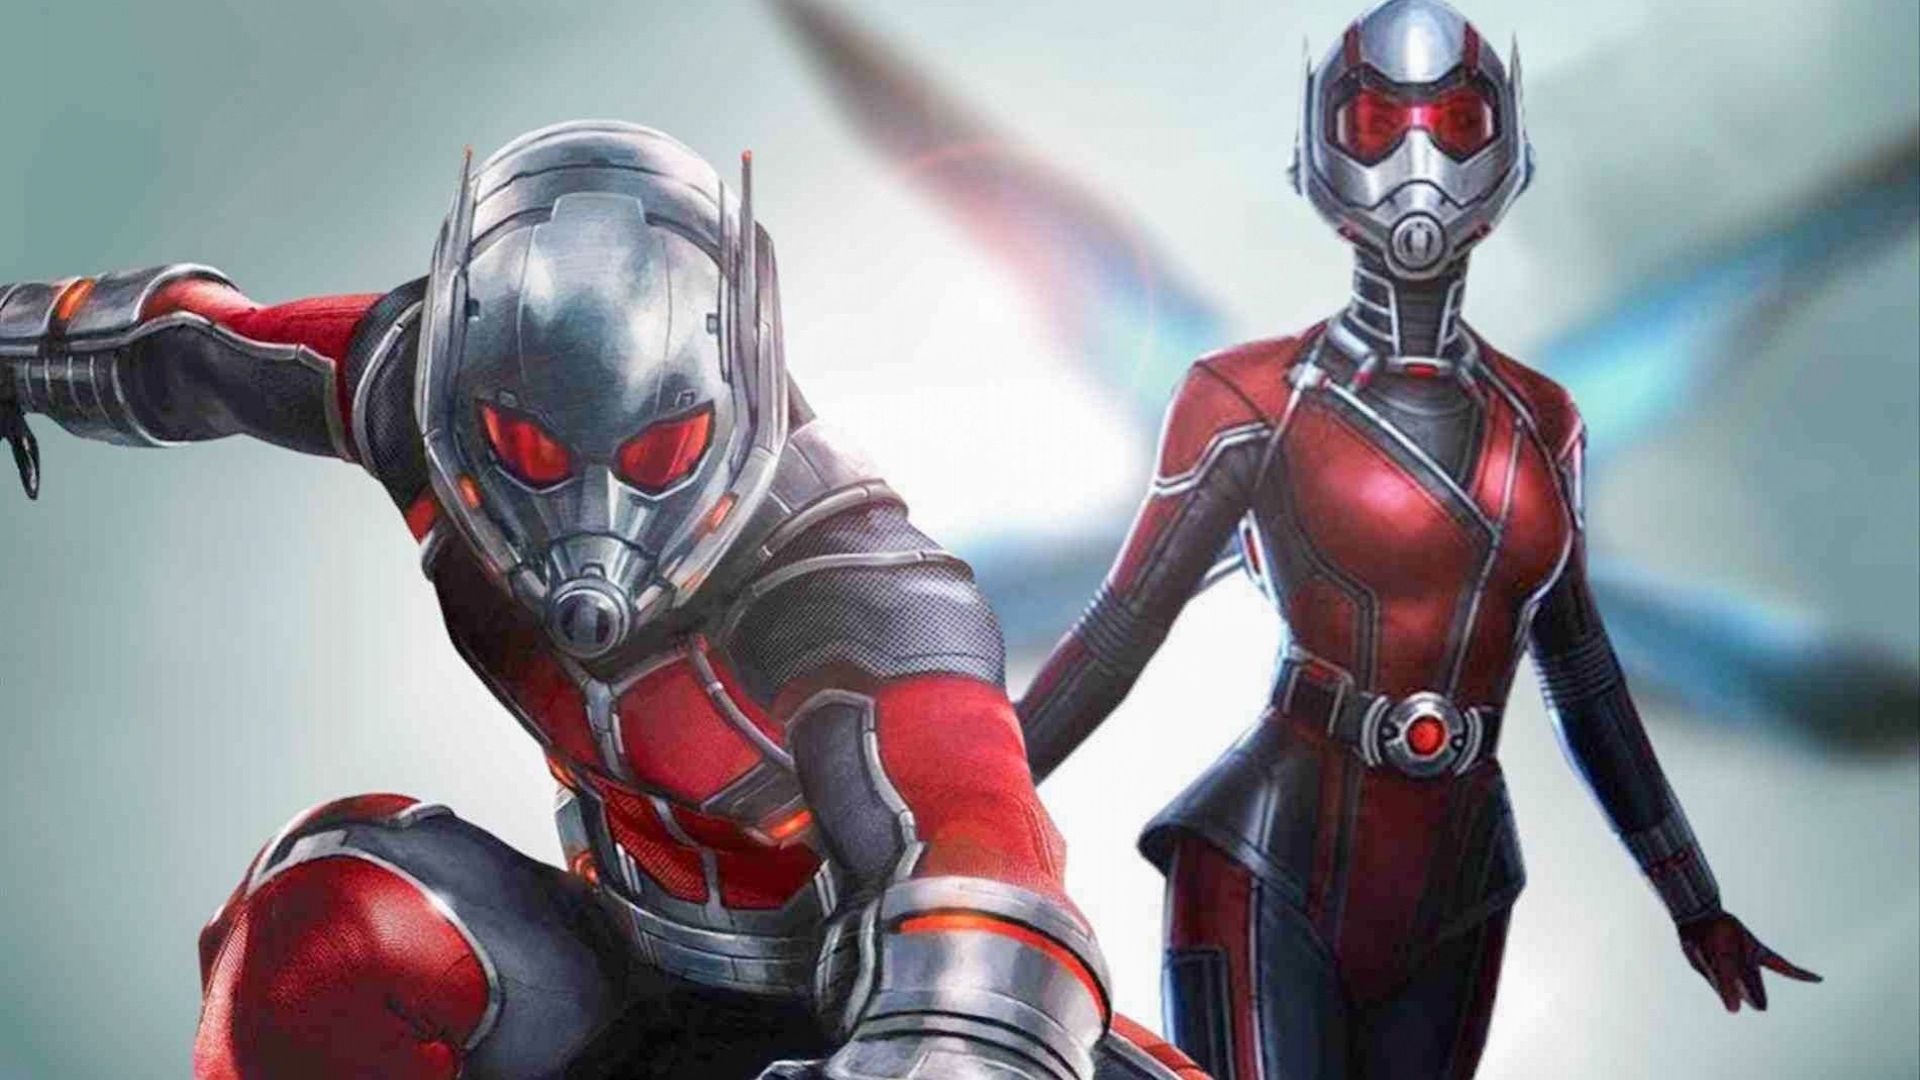 "Ant-Man et la Guêpe est le premier film du studio Marvel consacré à une super-héroïne, sur un total de vingt opus sortis en une décennie dans l'univers cinématographique Marvel.